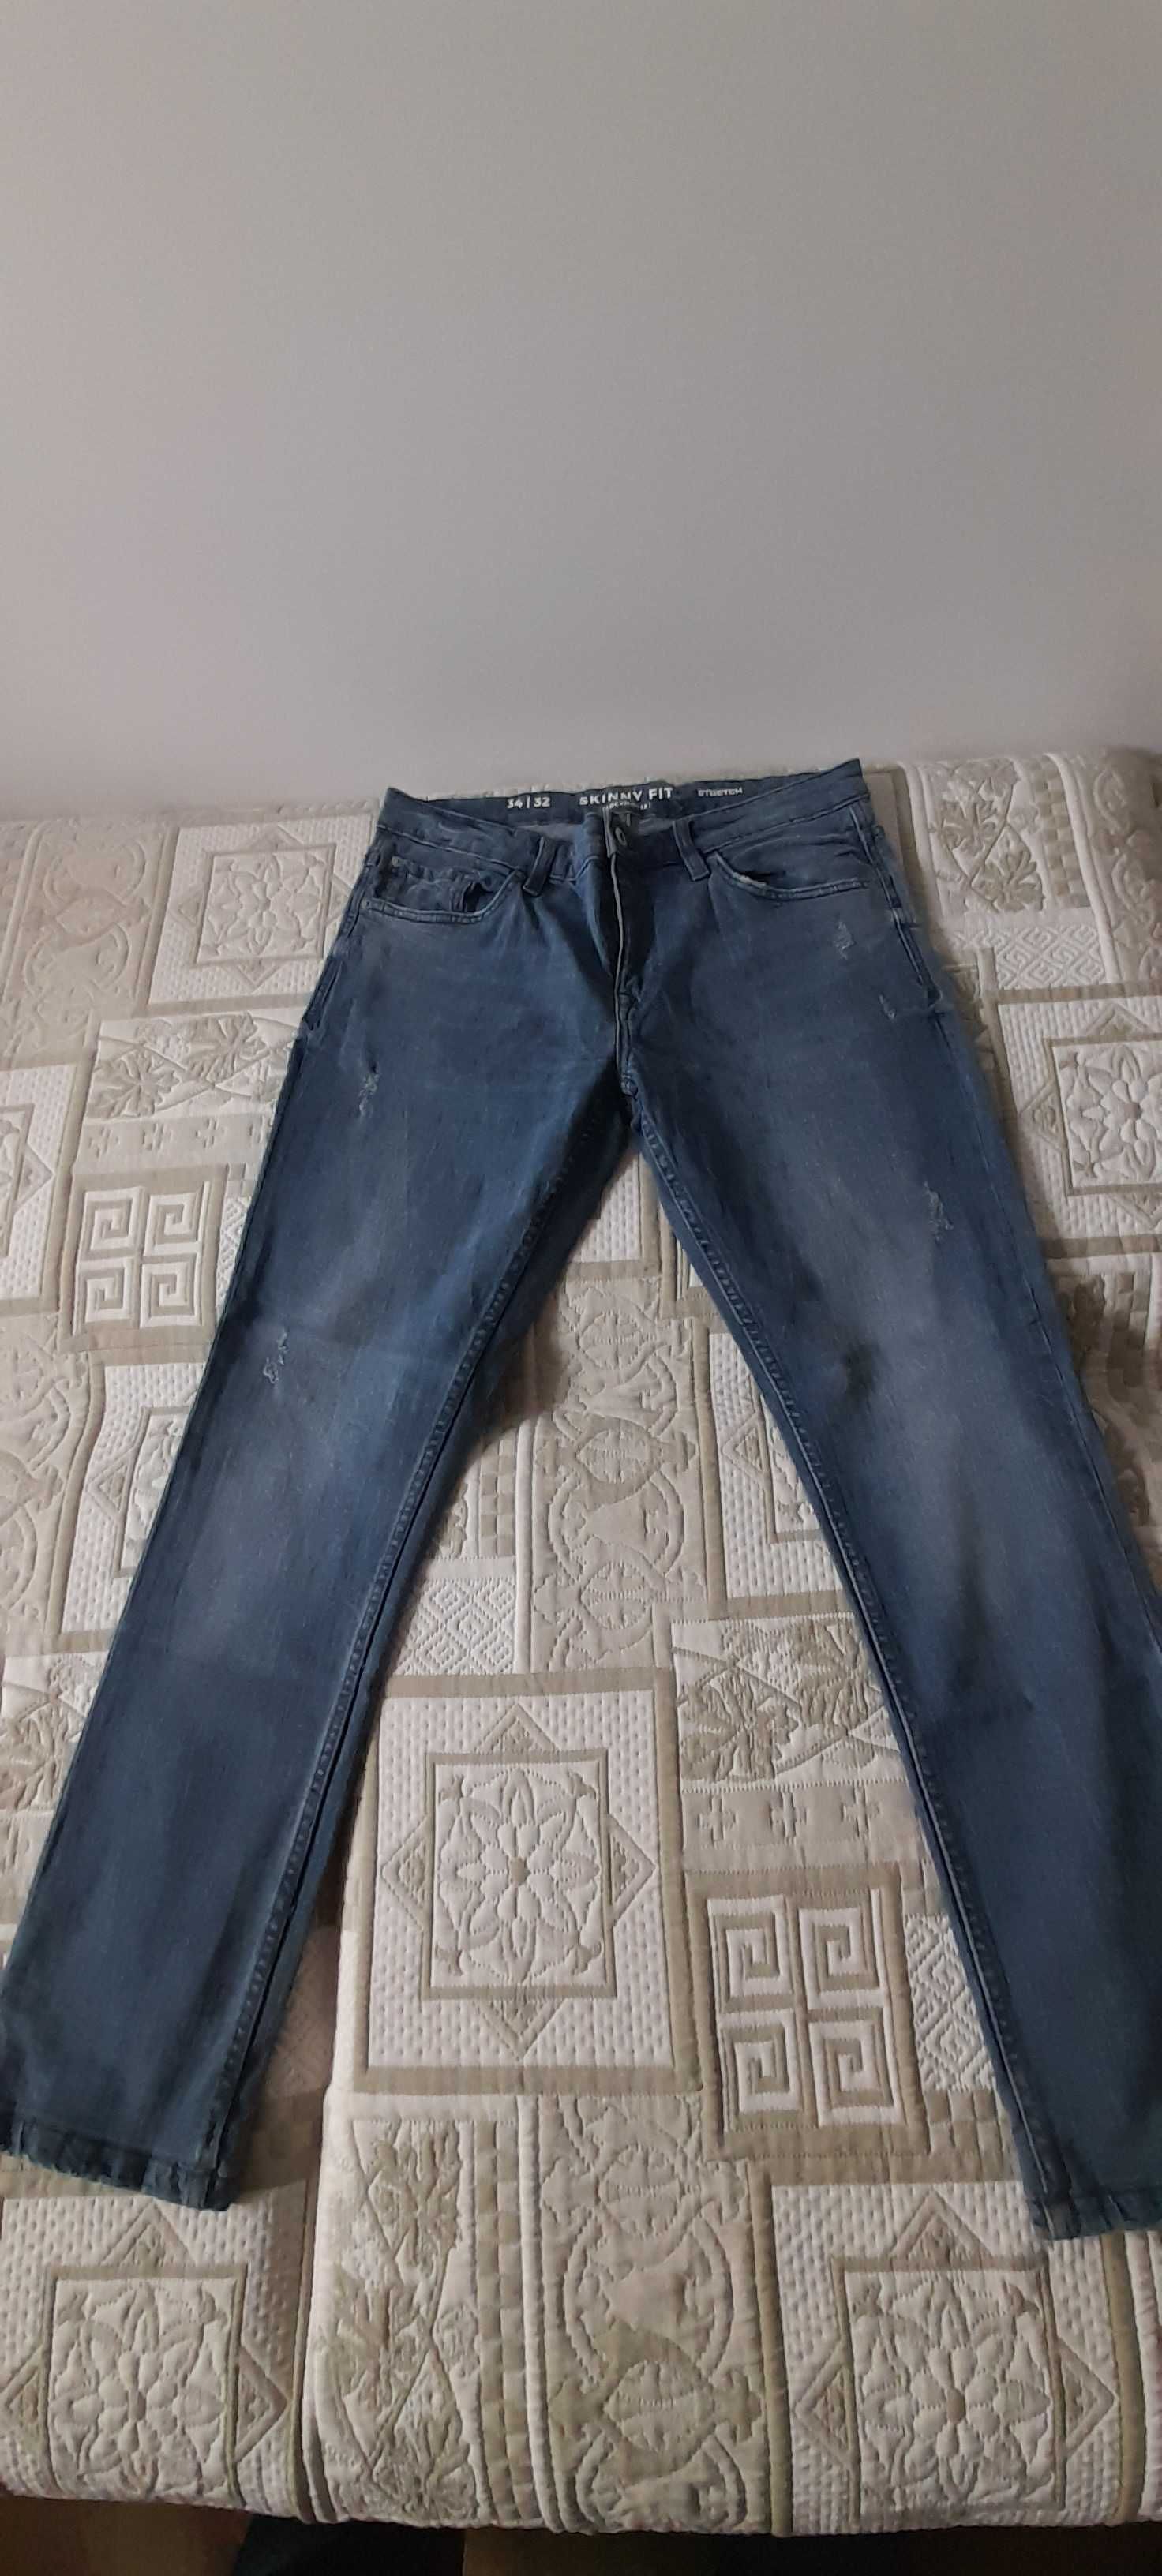 Spodnie męskie Jeansowe 34/32 Skinny Fit Stretch Clockhouse jak nowe